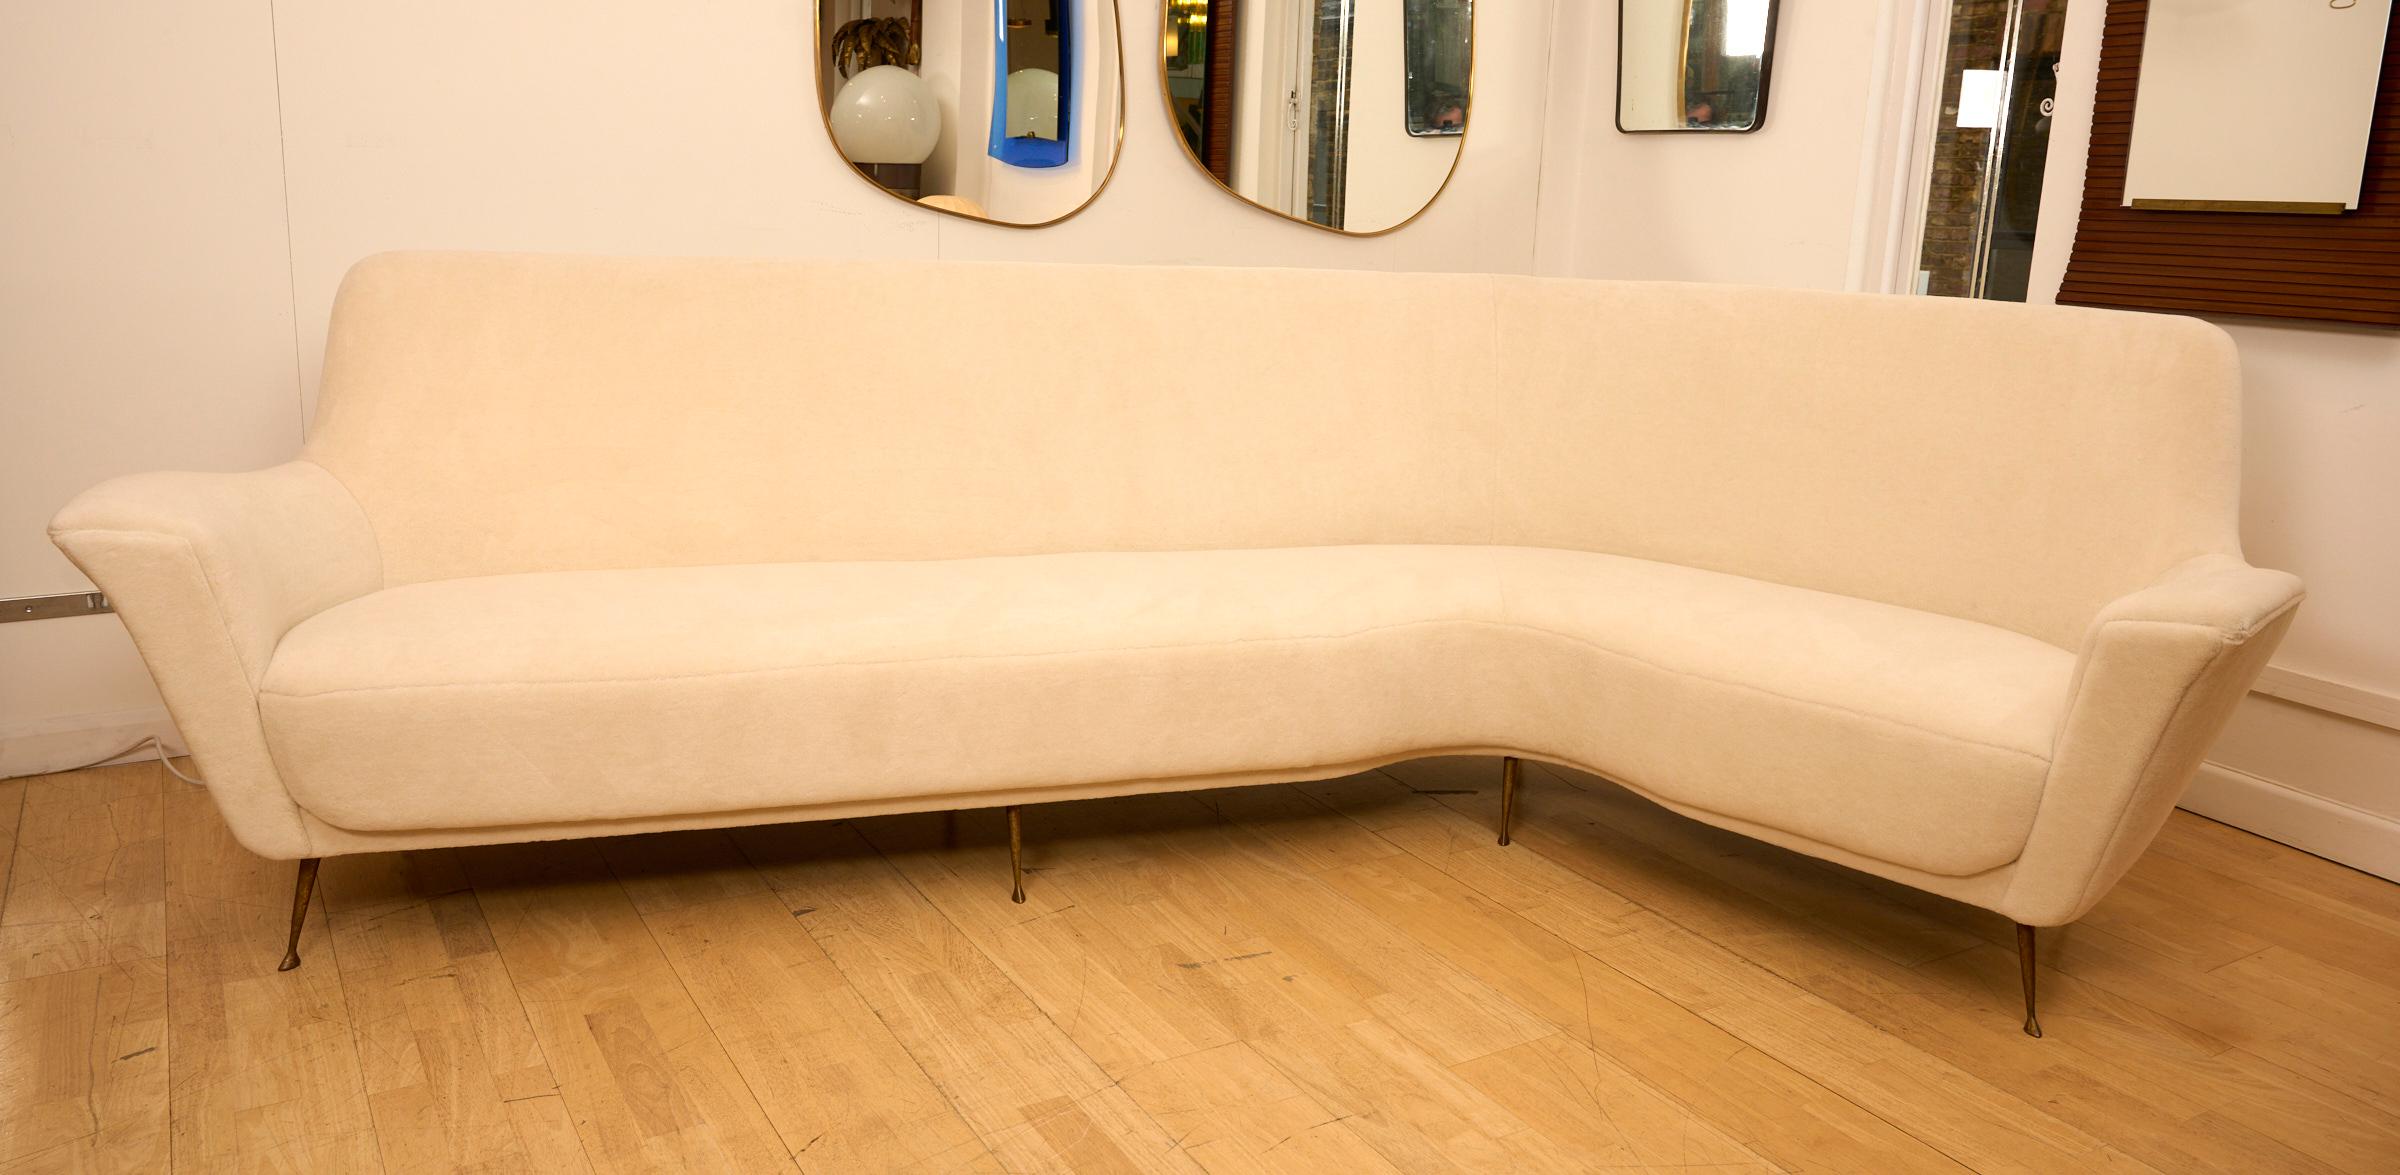 Italian Large Curved 'L' Shape Ico Parisi Style Sofa, Italy, circa 1950